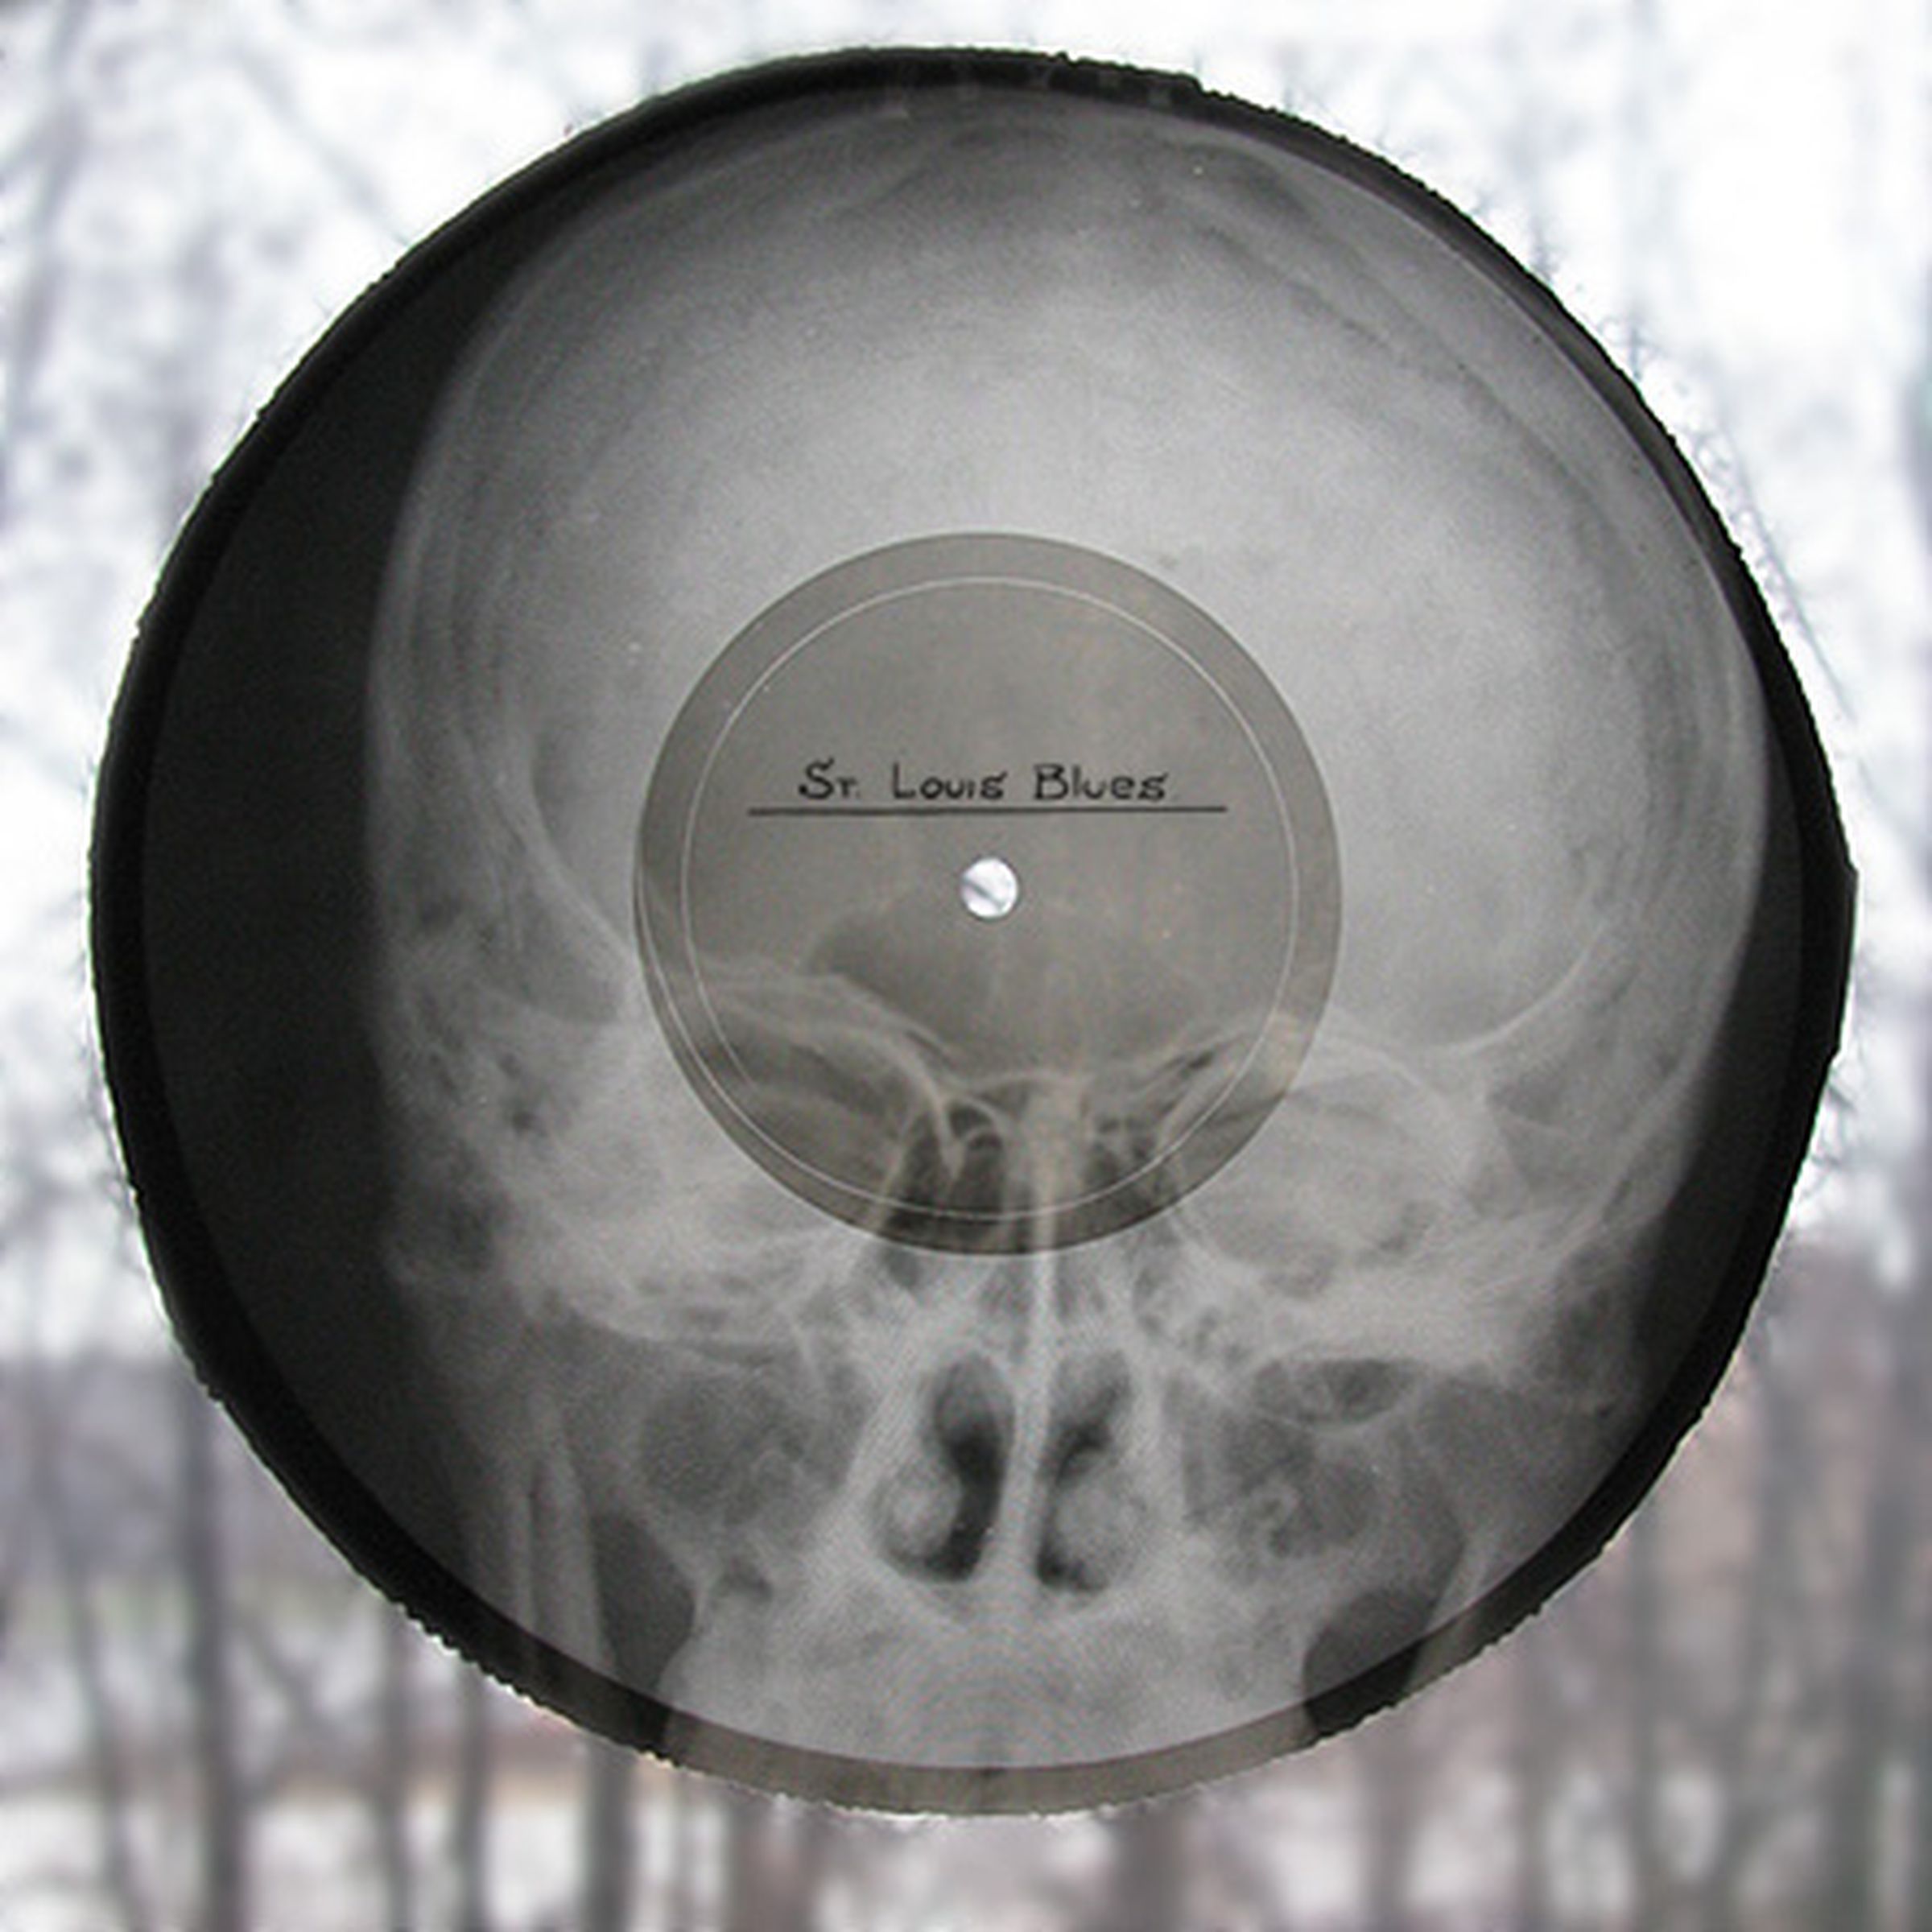 Soviet X-ray records